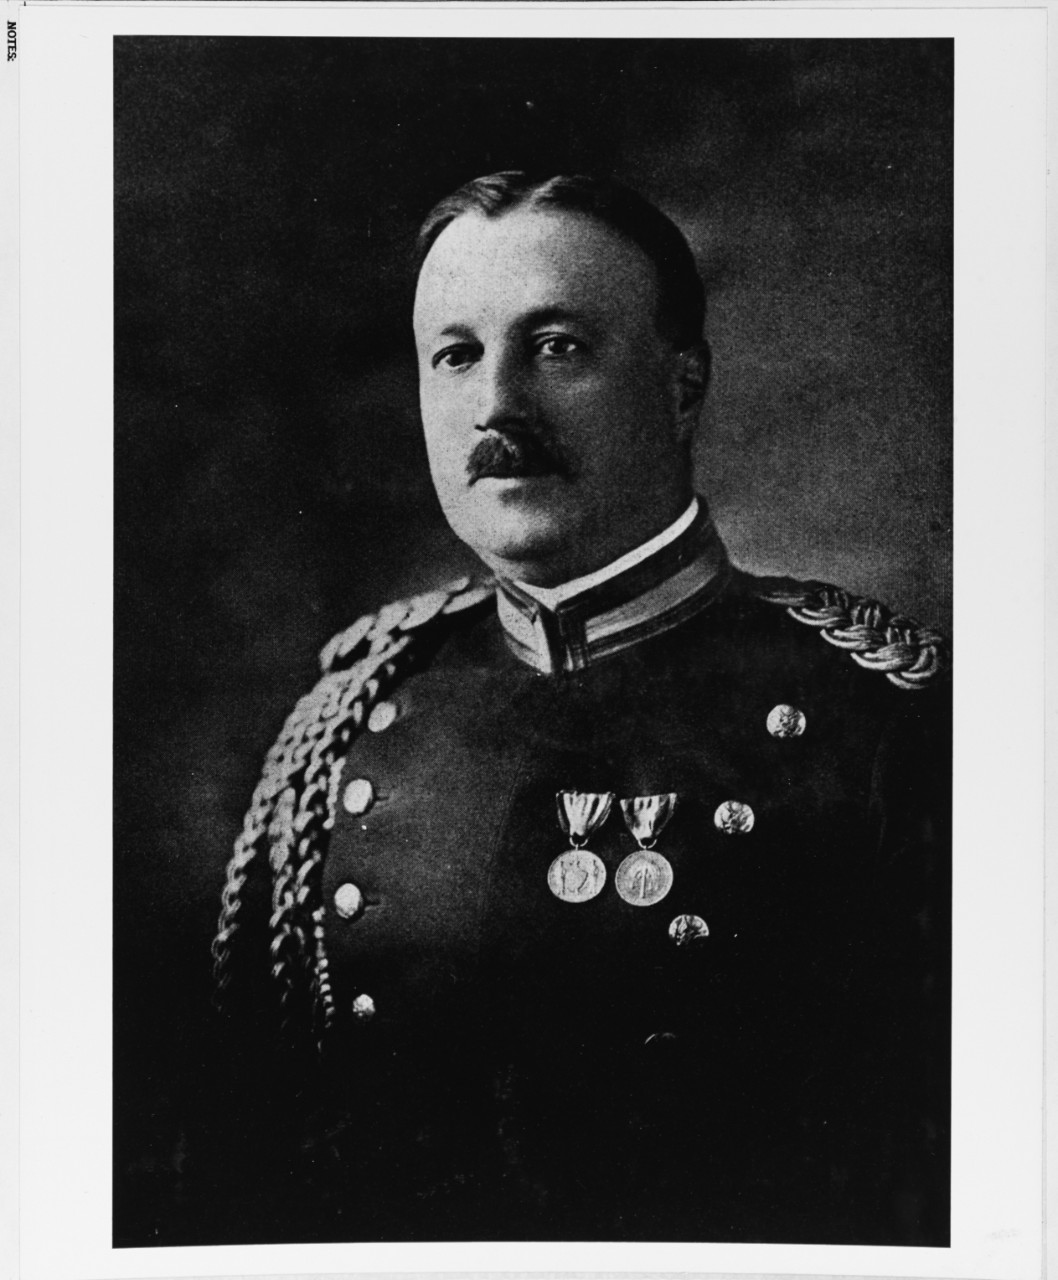 Major Archibald W. Butt, U.S. Army